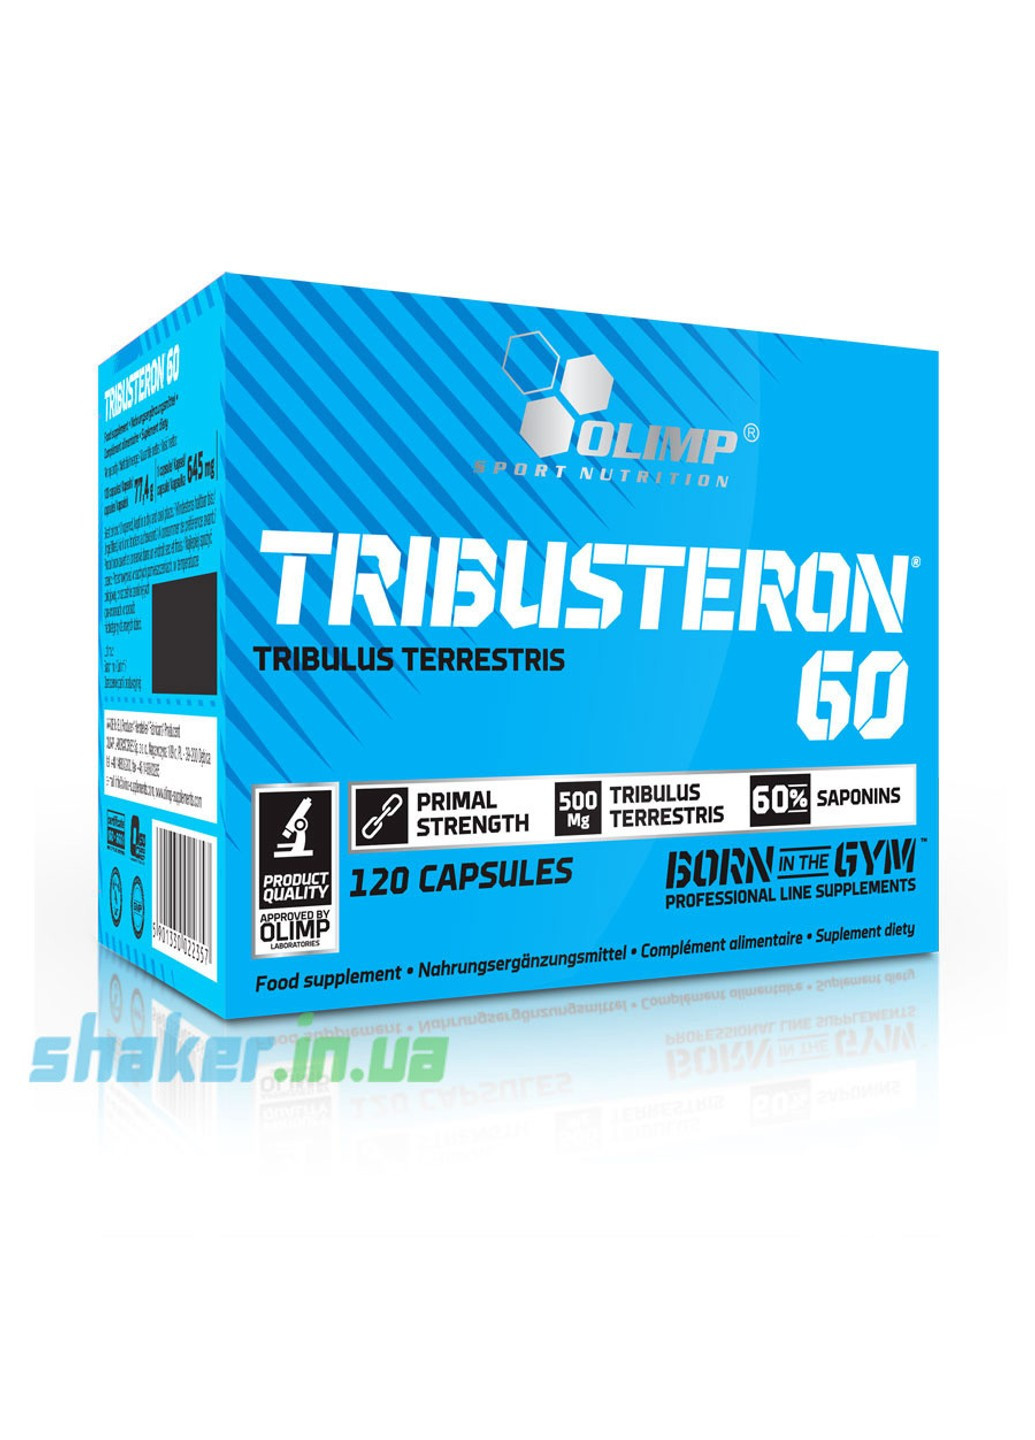 Трибулус террестрис Tribusteron 60 (120 капс) олімп трібустерон Olimp (255408548)